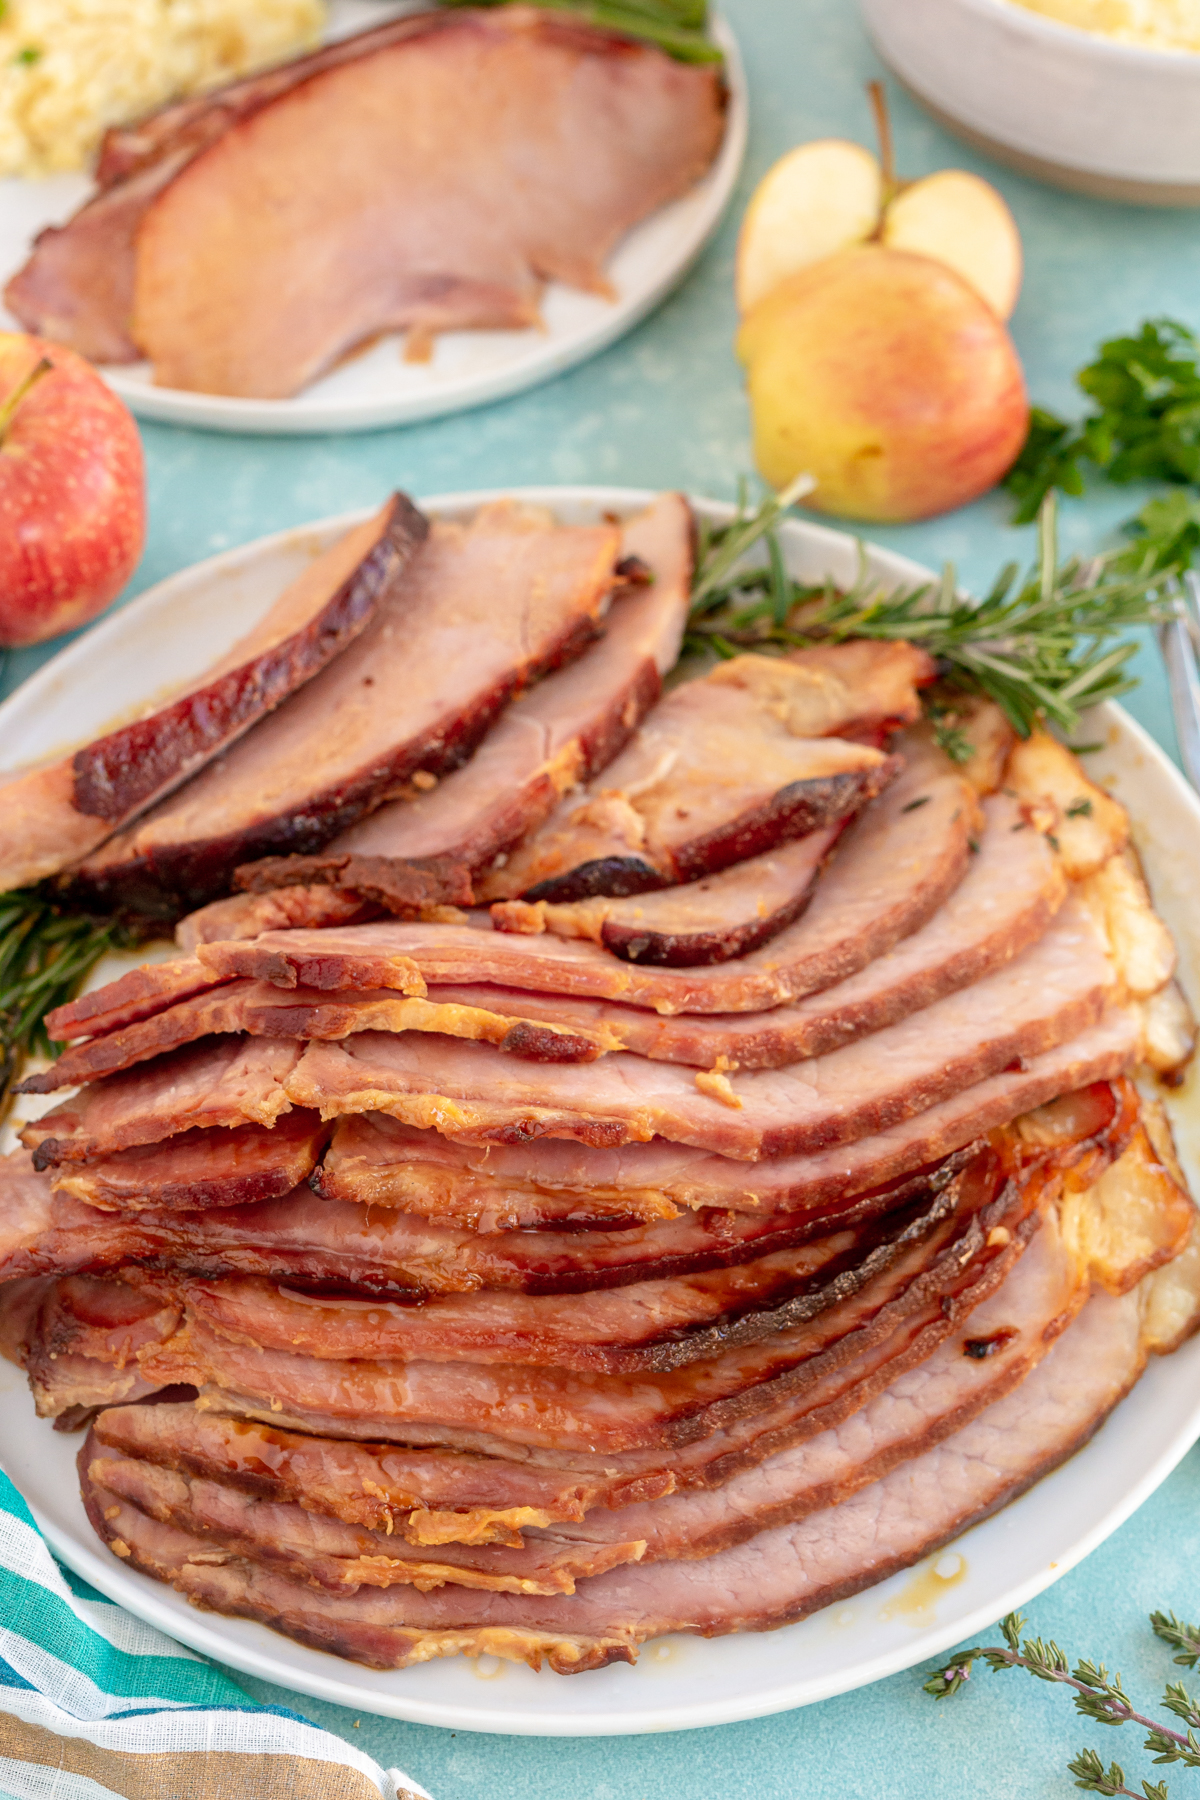 a sliced glazed ham on a plate